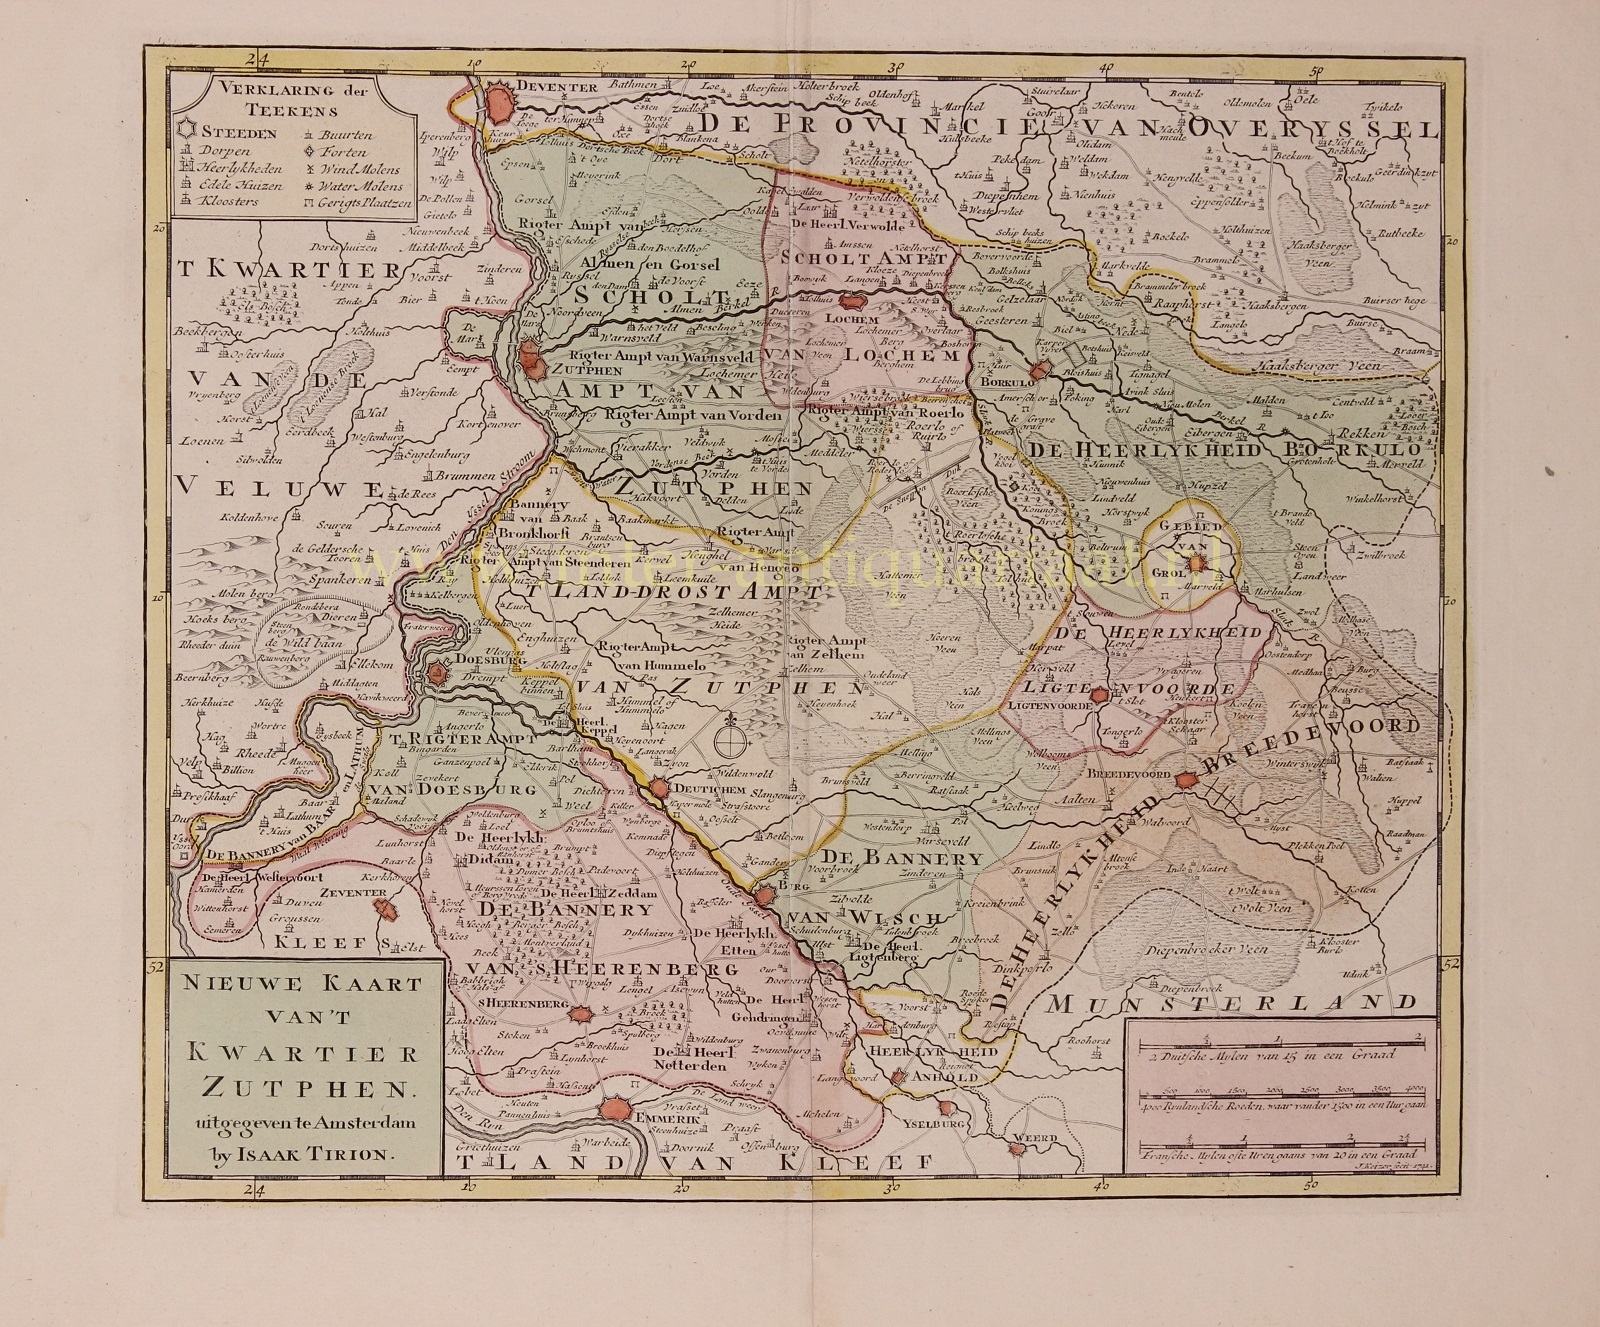  - Gelderland, County of Zutphen - Isaak Tirion, 1741